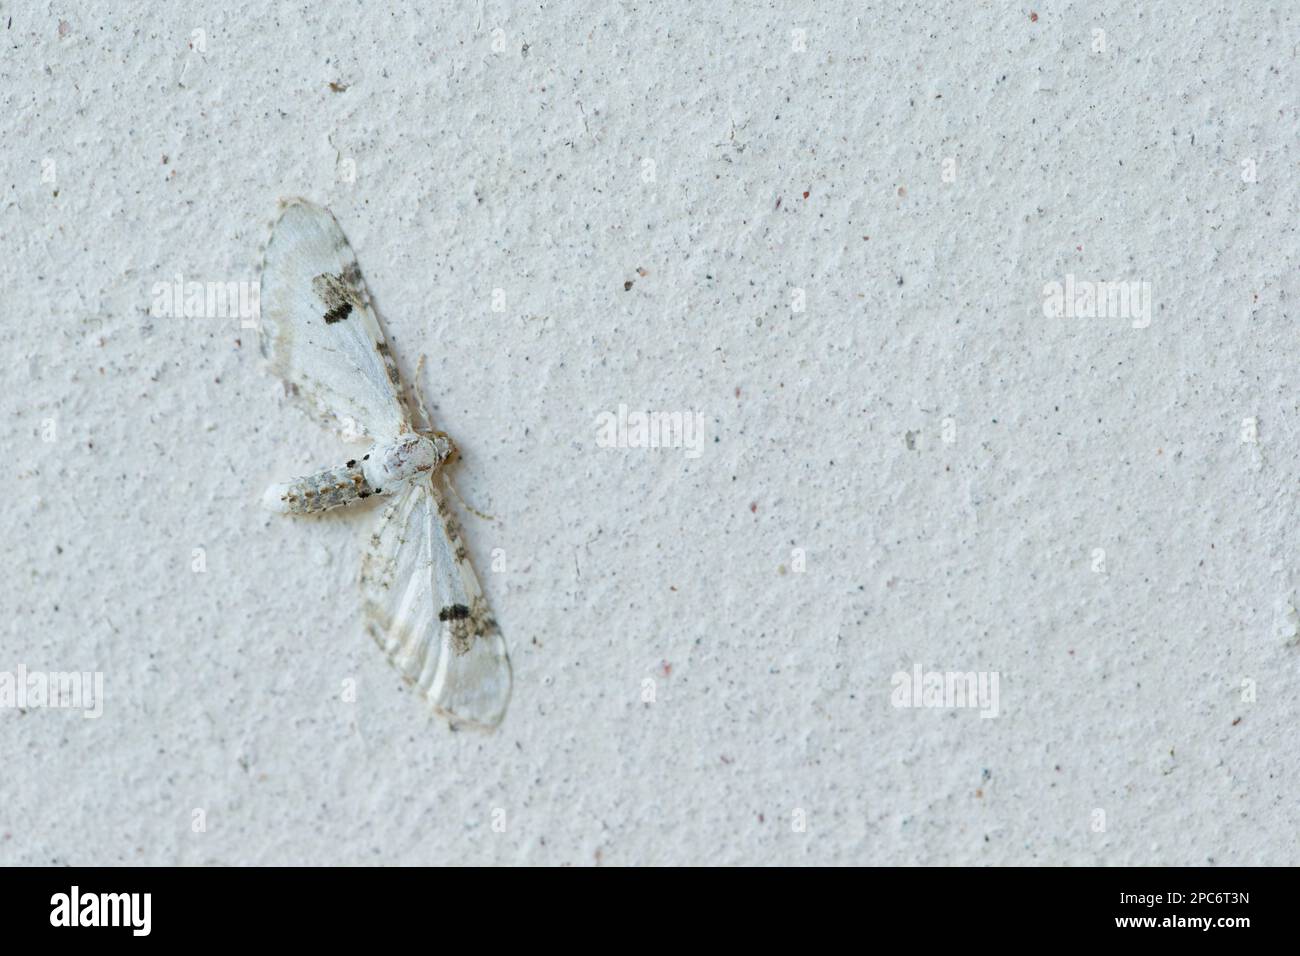 Limettenkugelmotte (Eupithecia centaureata), die auf einer weißen Wand ruht, getarnt Stockfoto